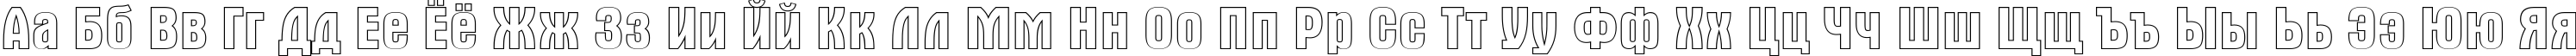 Пример написания русского алфавита шрифтом a_AlternaOtl